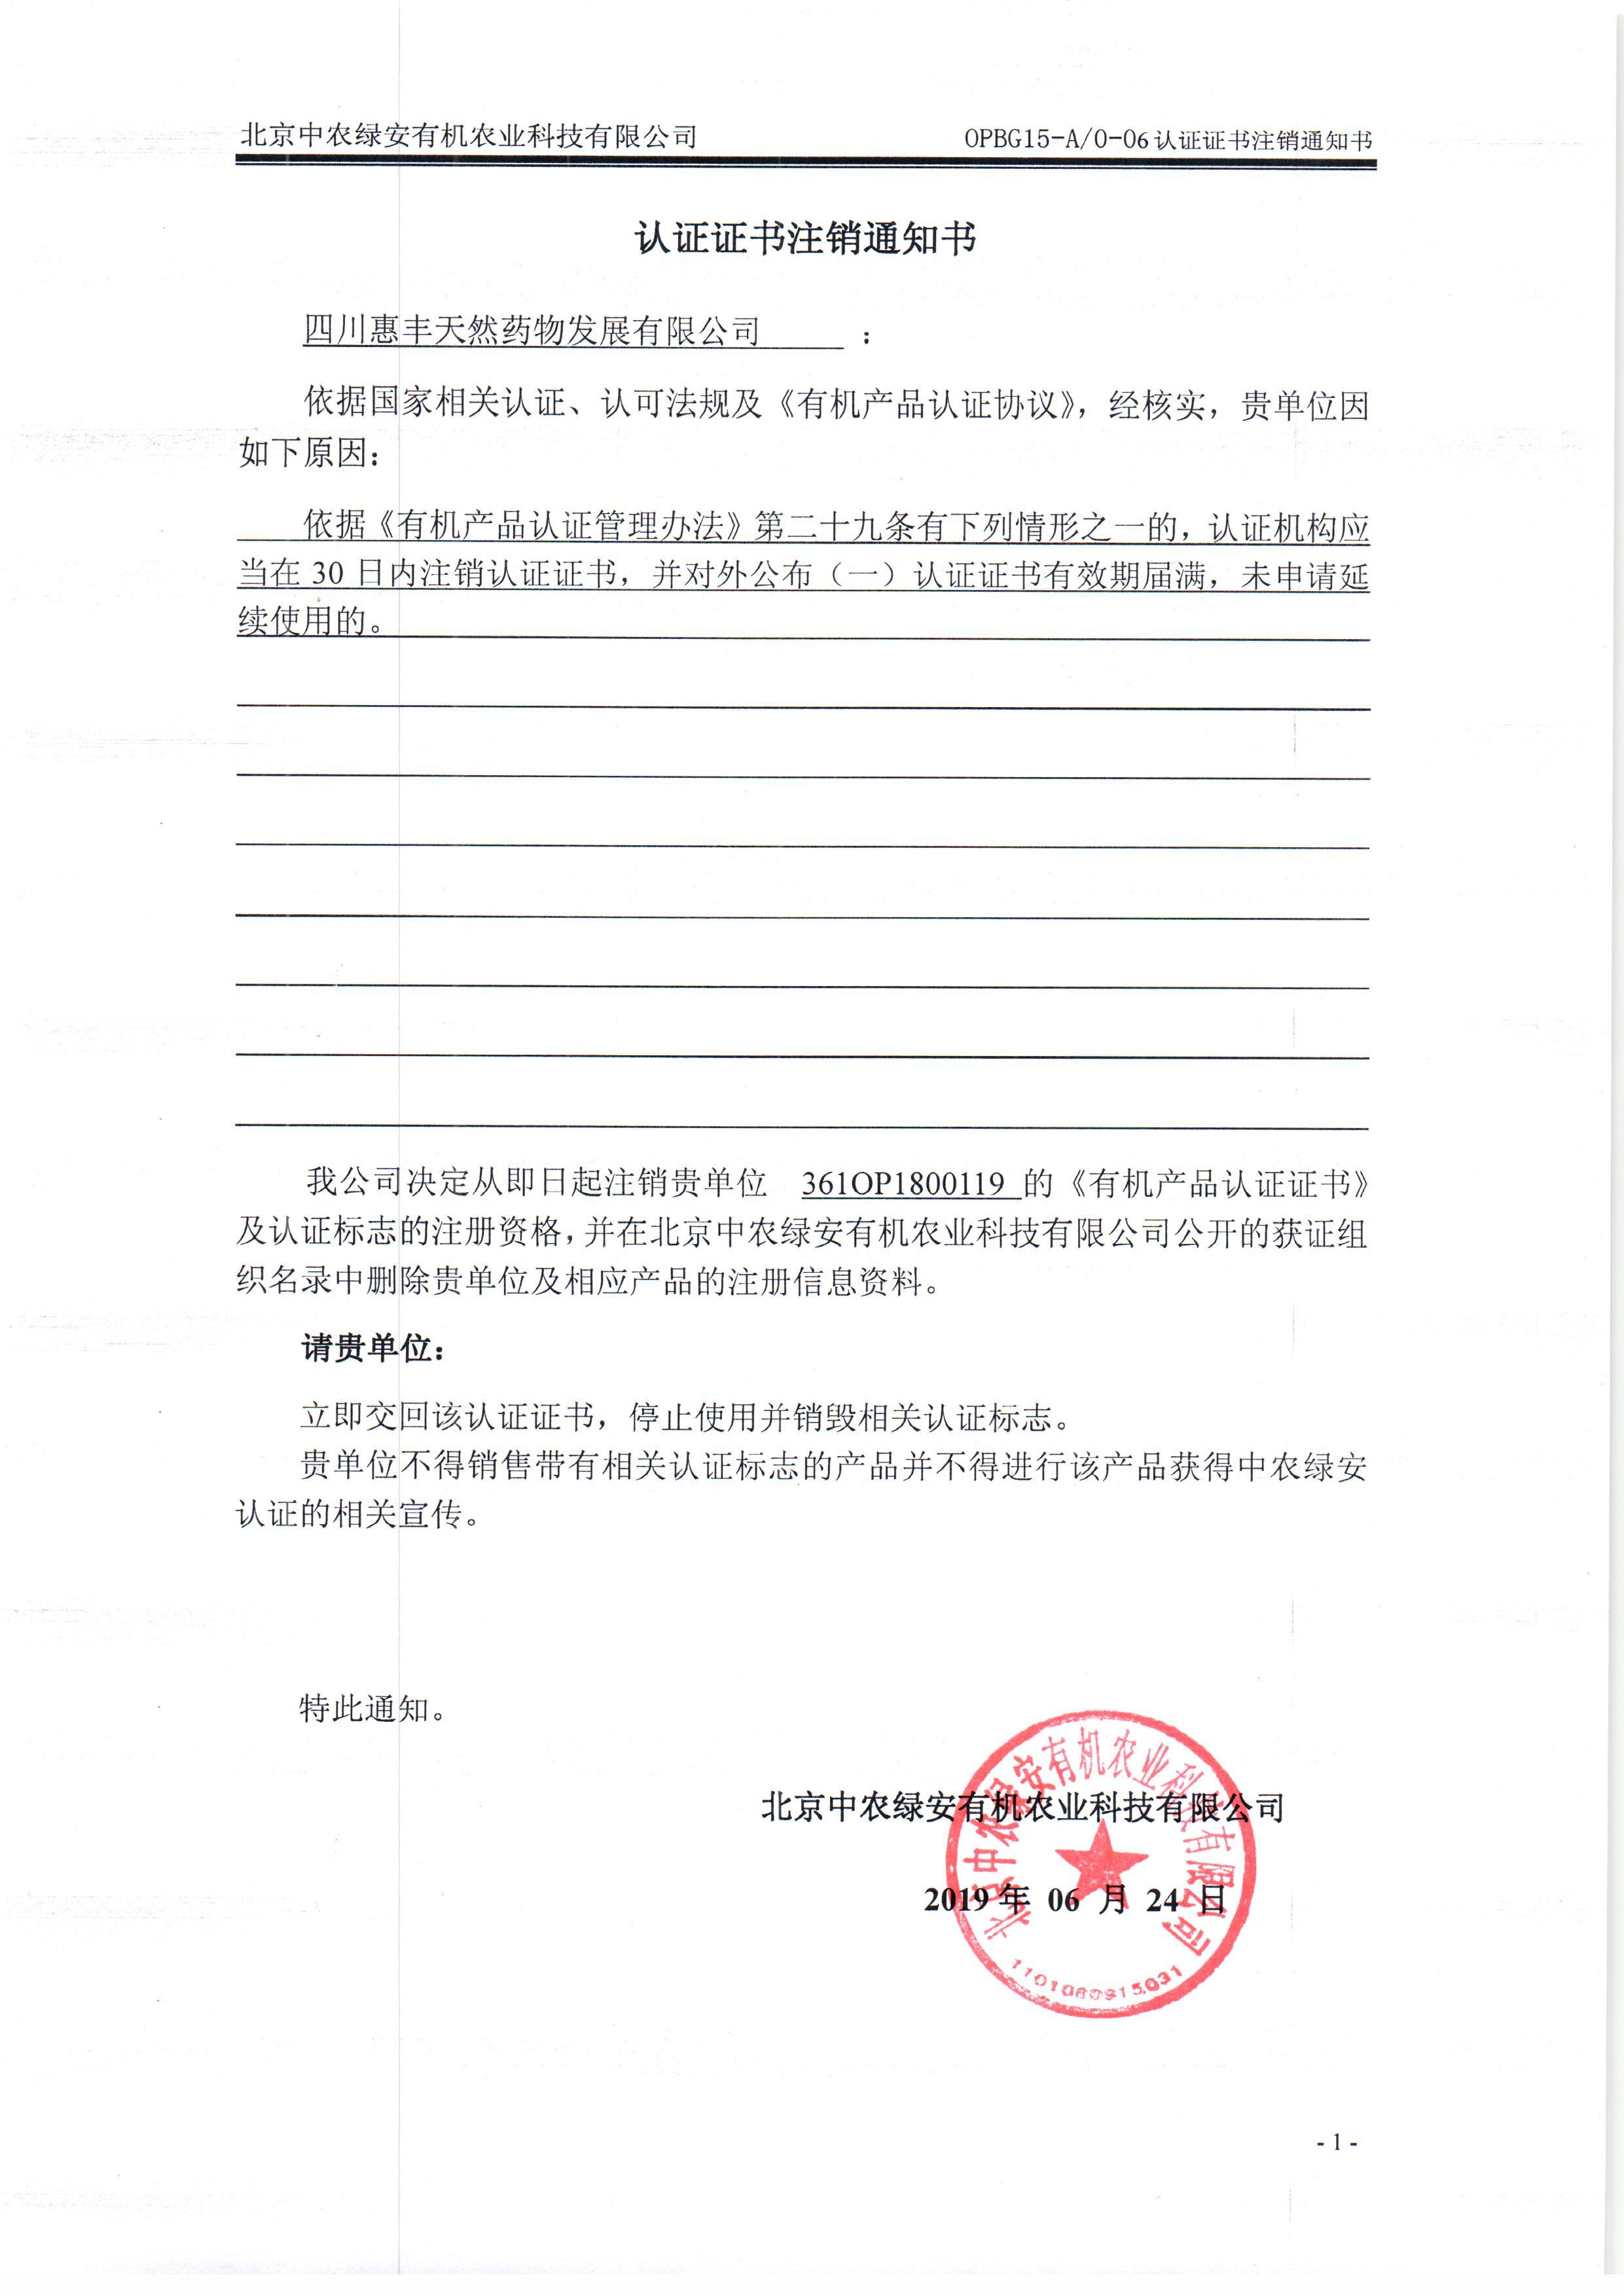 四川惠丰天然药物发展有限公司证书注销通知书